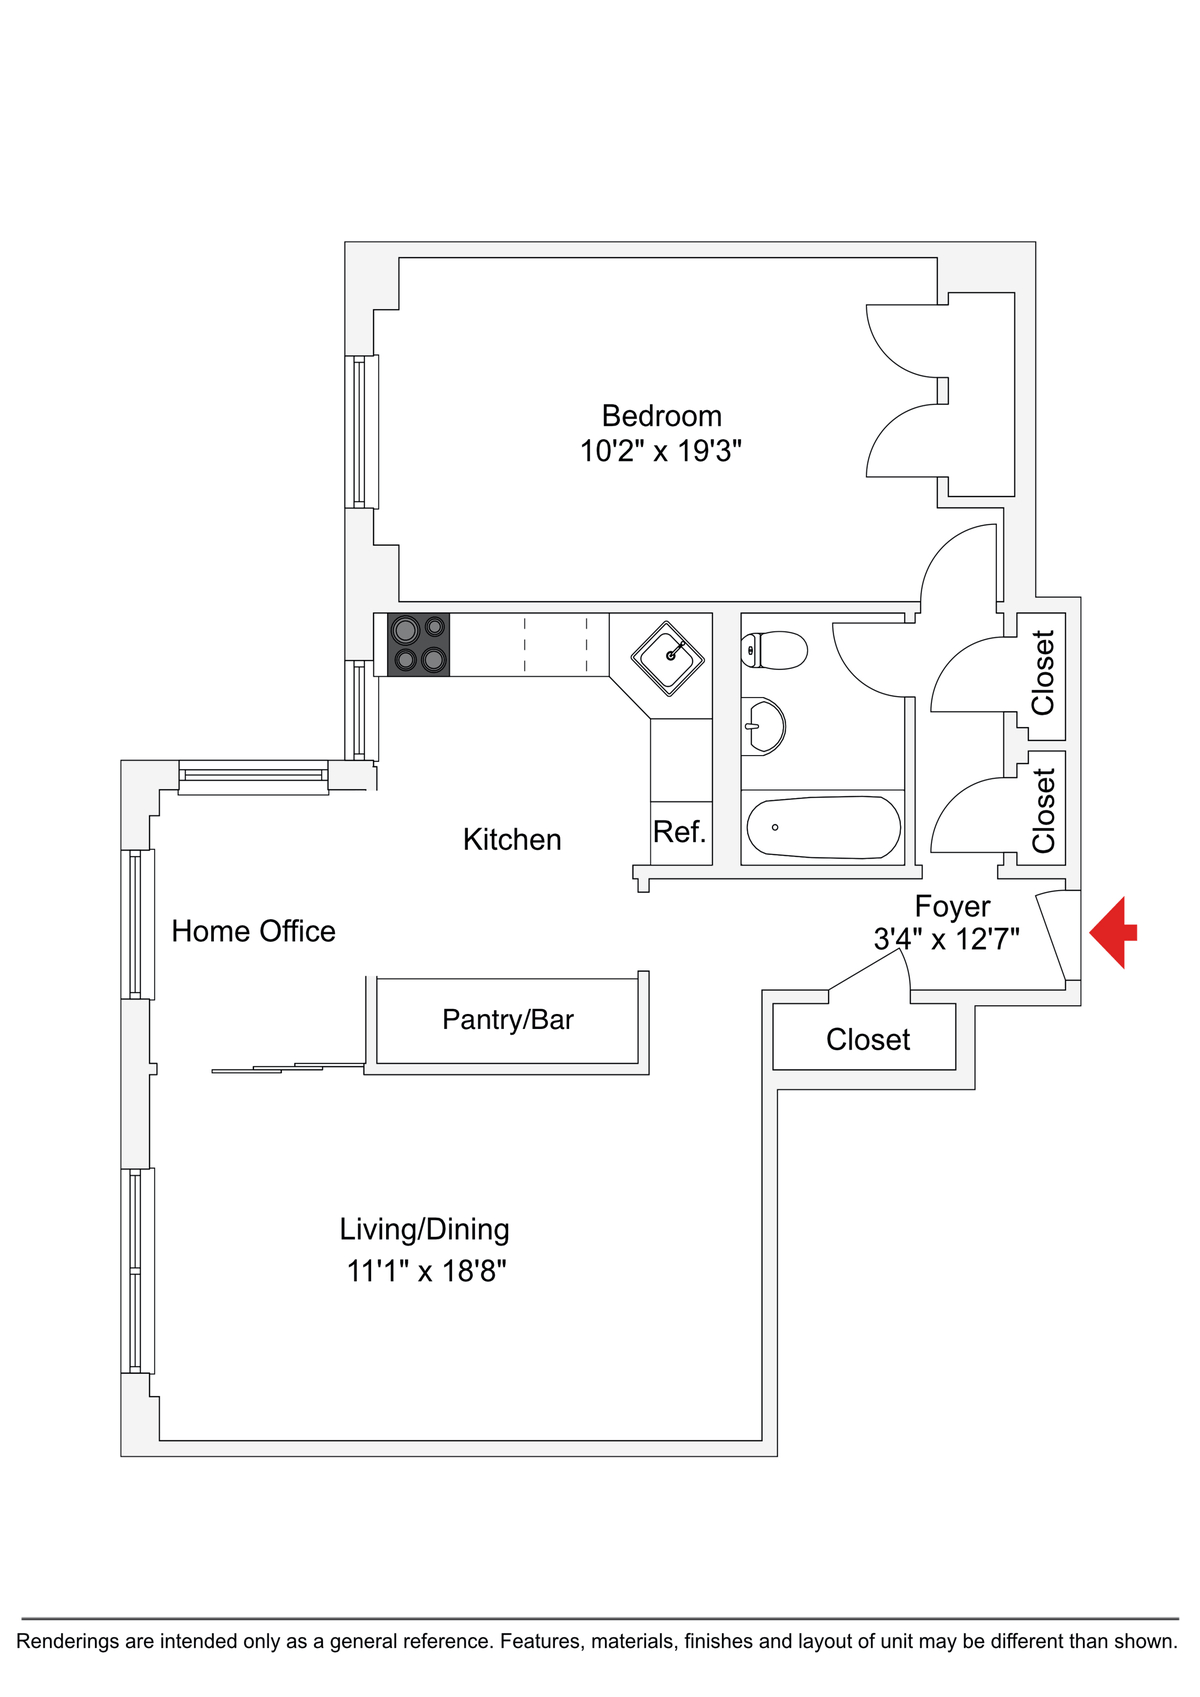 floorplan showing sliding door between dining and living